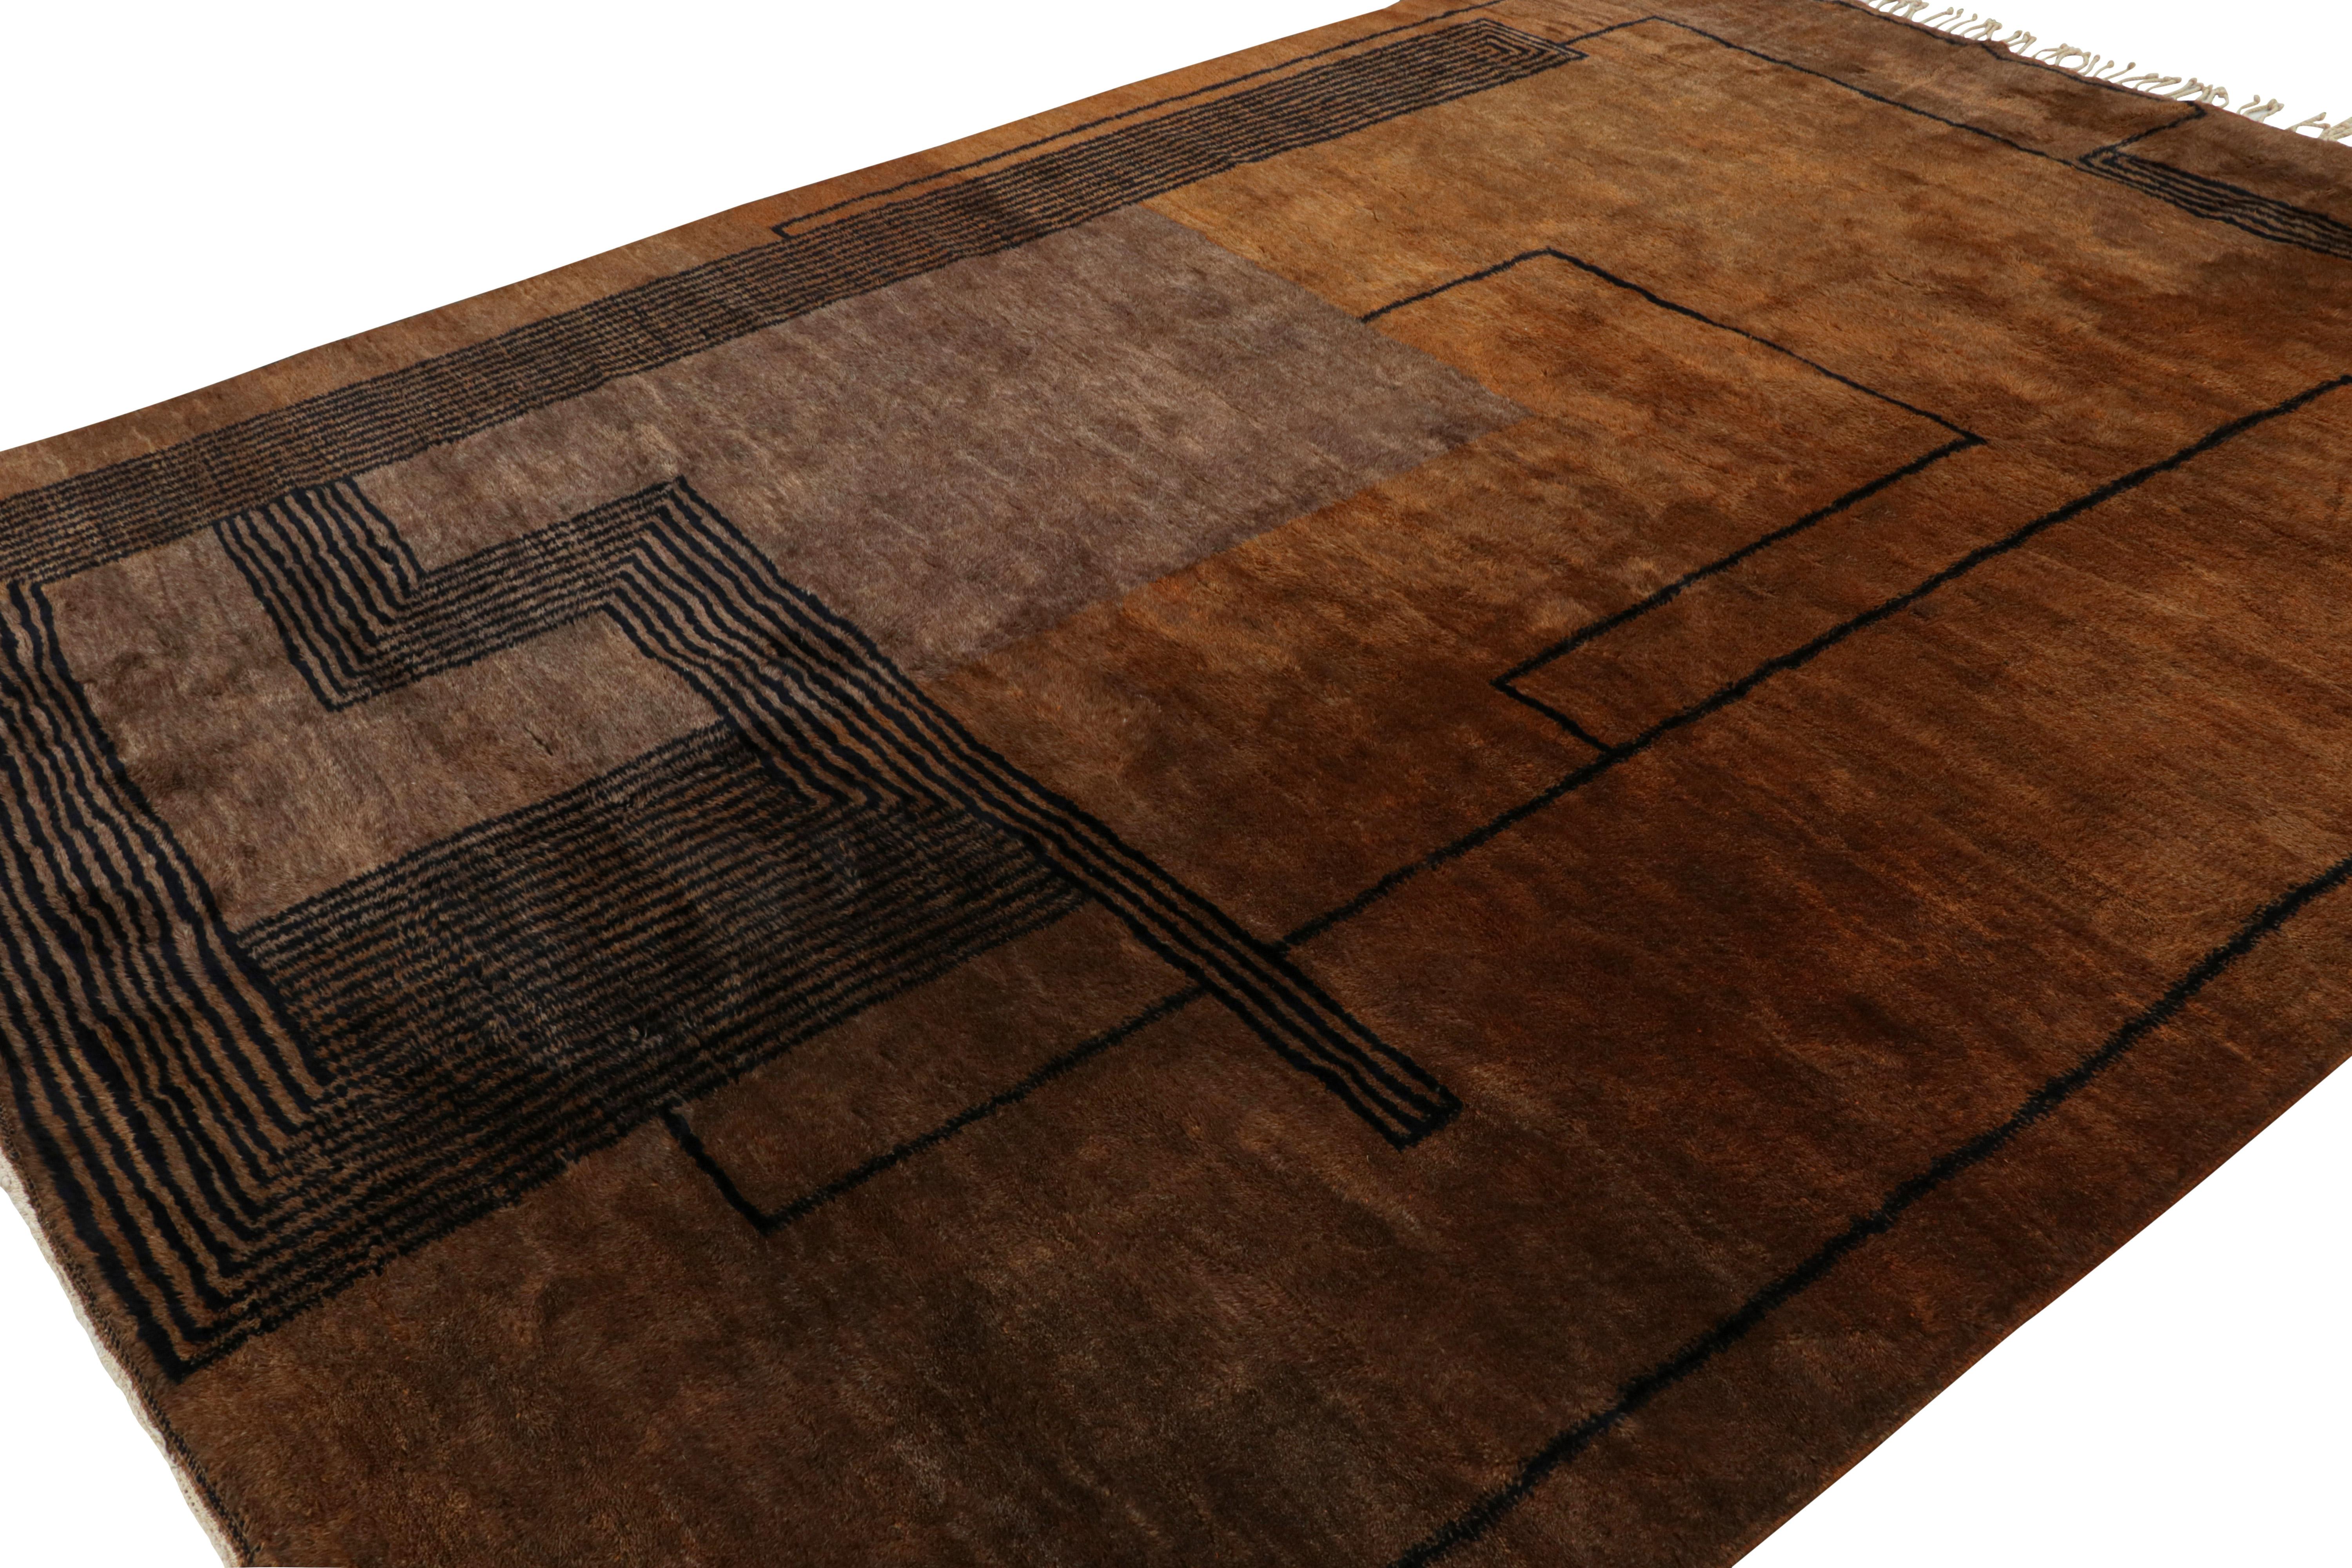 Dieser handgeknüpfte marokkanische Teppich 10x13 von Rug & Kilim repräsentiert eine aufregende neue Linie moderner Stammesteppiche. Sein Design spielt mit schwarzen geometrischen Mustern im Art-Déco-Stil in einer üppigen Hochflor-Textur -